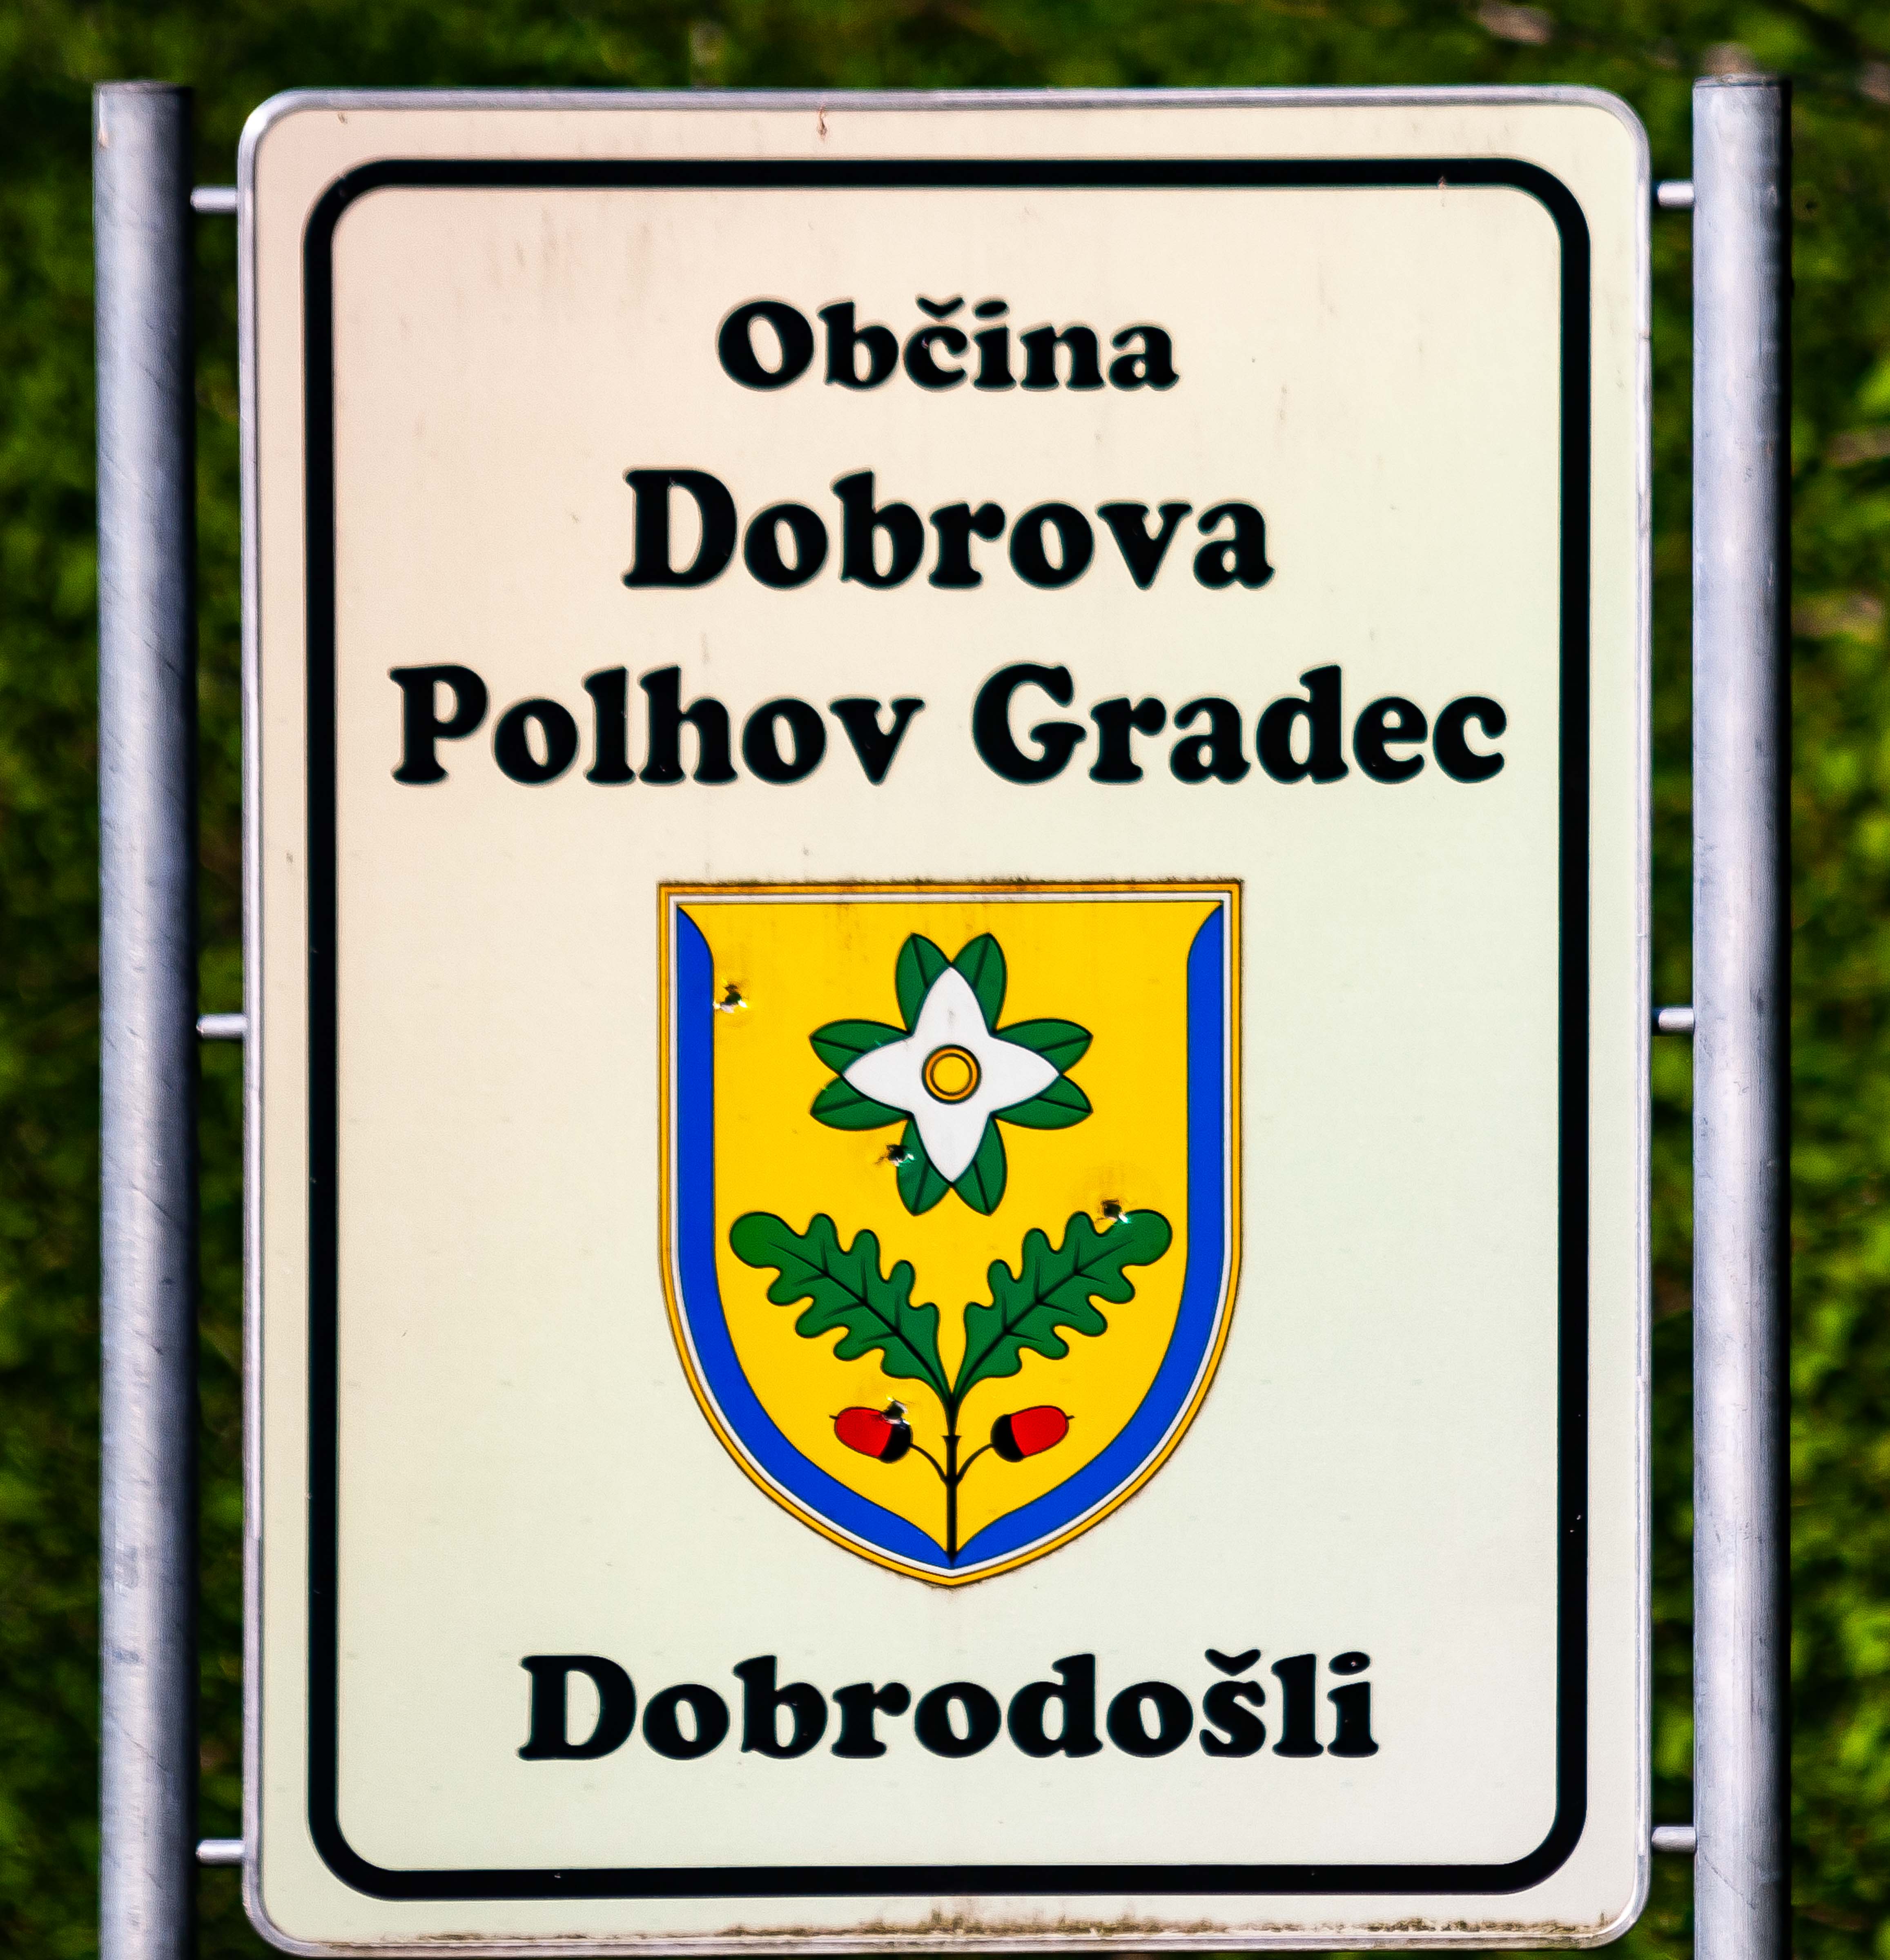 Slovenia, Dobrova-Polhov Gradec Prov, Obcina Dobrova-Polhov Gradec Welcomes You, 2006, IMG 5859